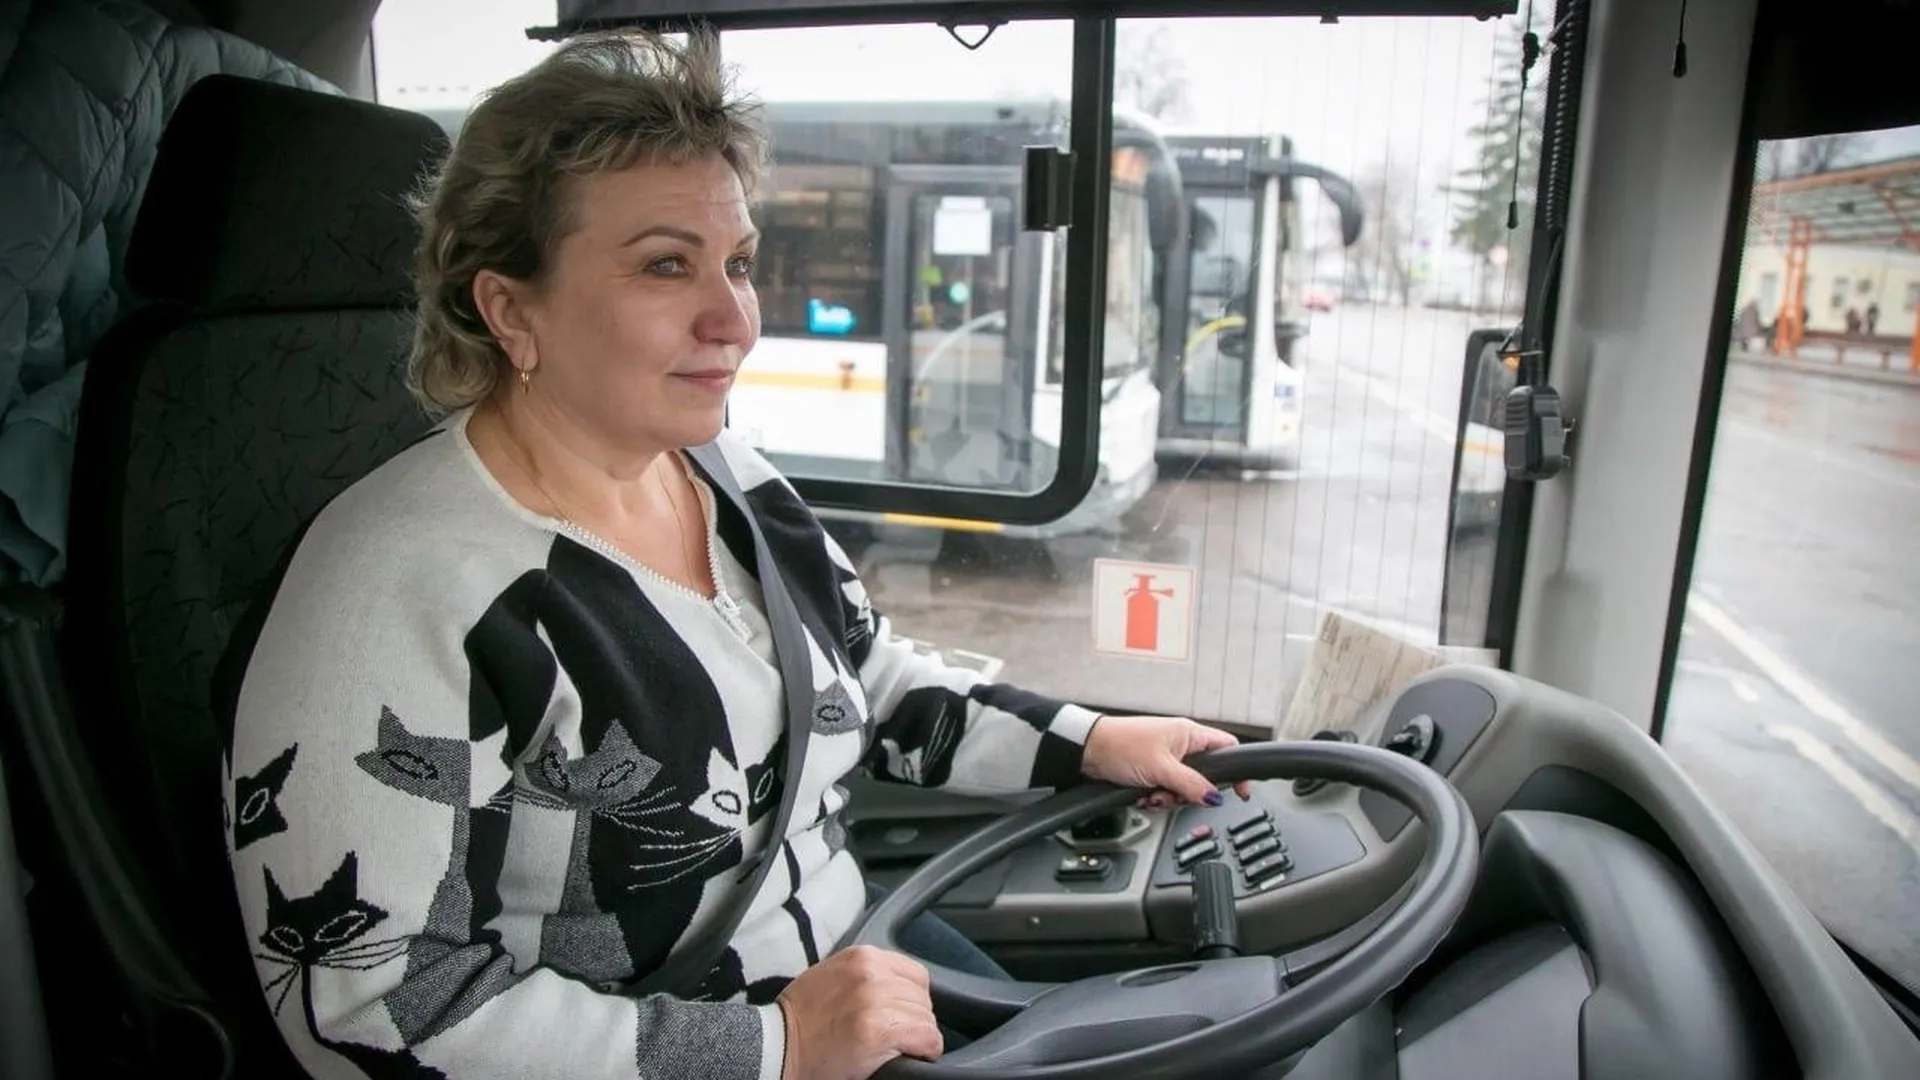 Пассажирские автобусы по улицам Коломны водит Надежда Шашкова. Профессиональную деятельность она начинала за рулем маршрутного такси, а последние 9 лет управляет автобусами большого класса.